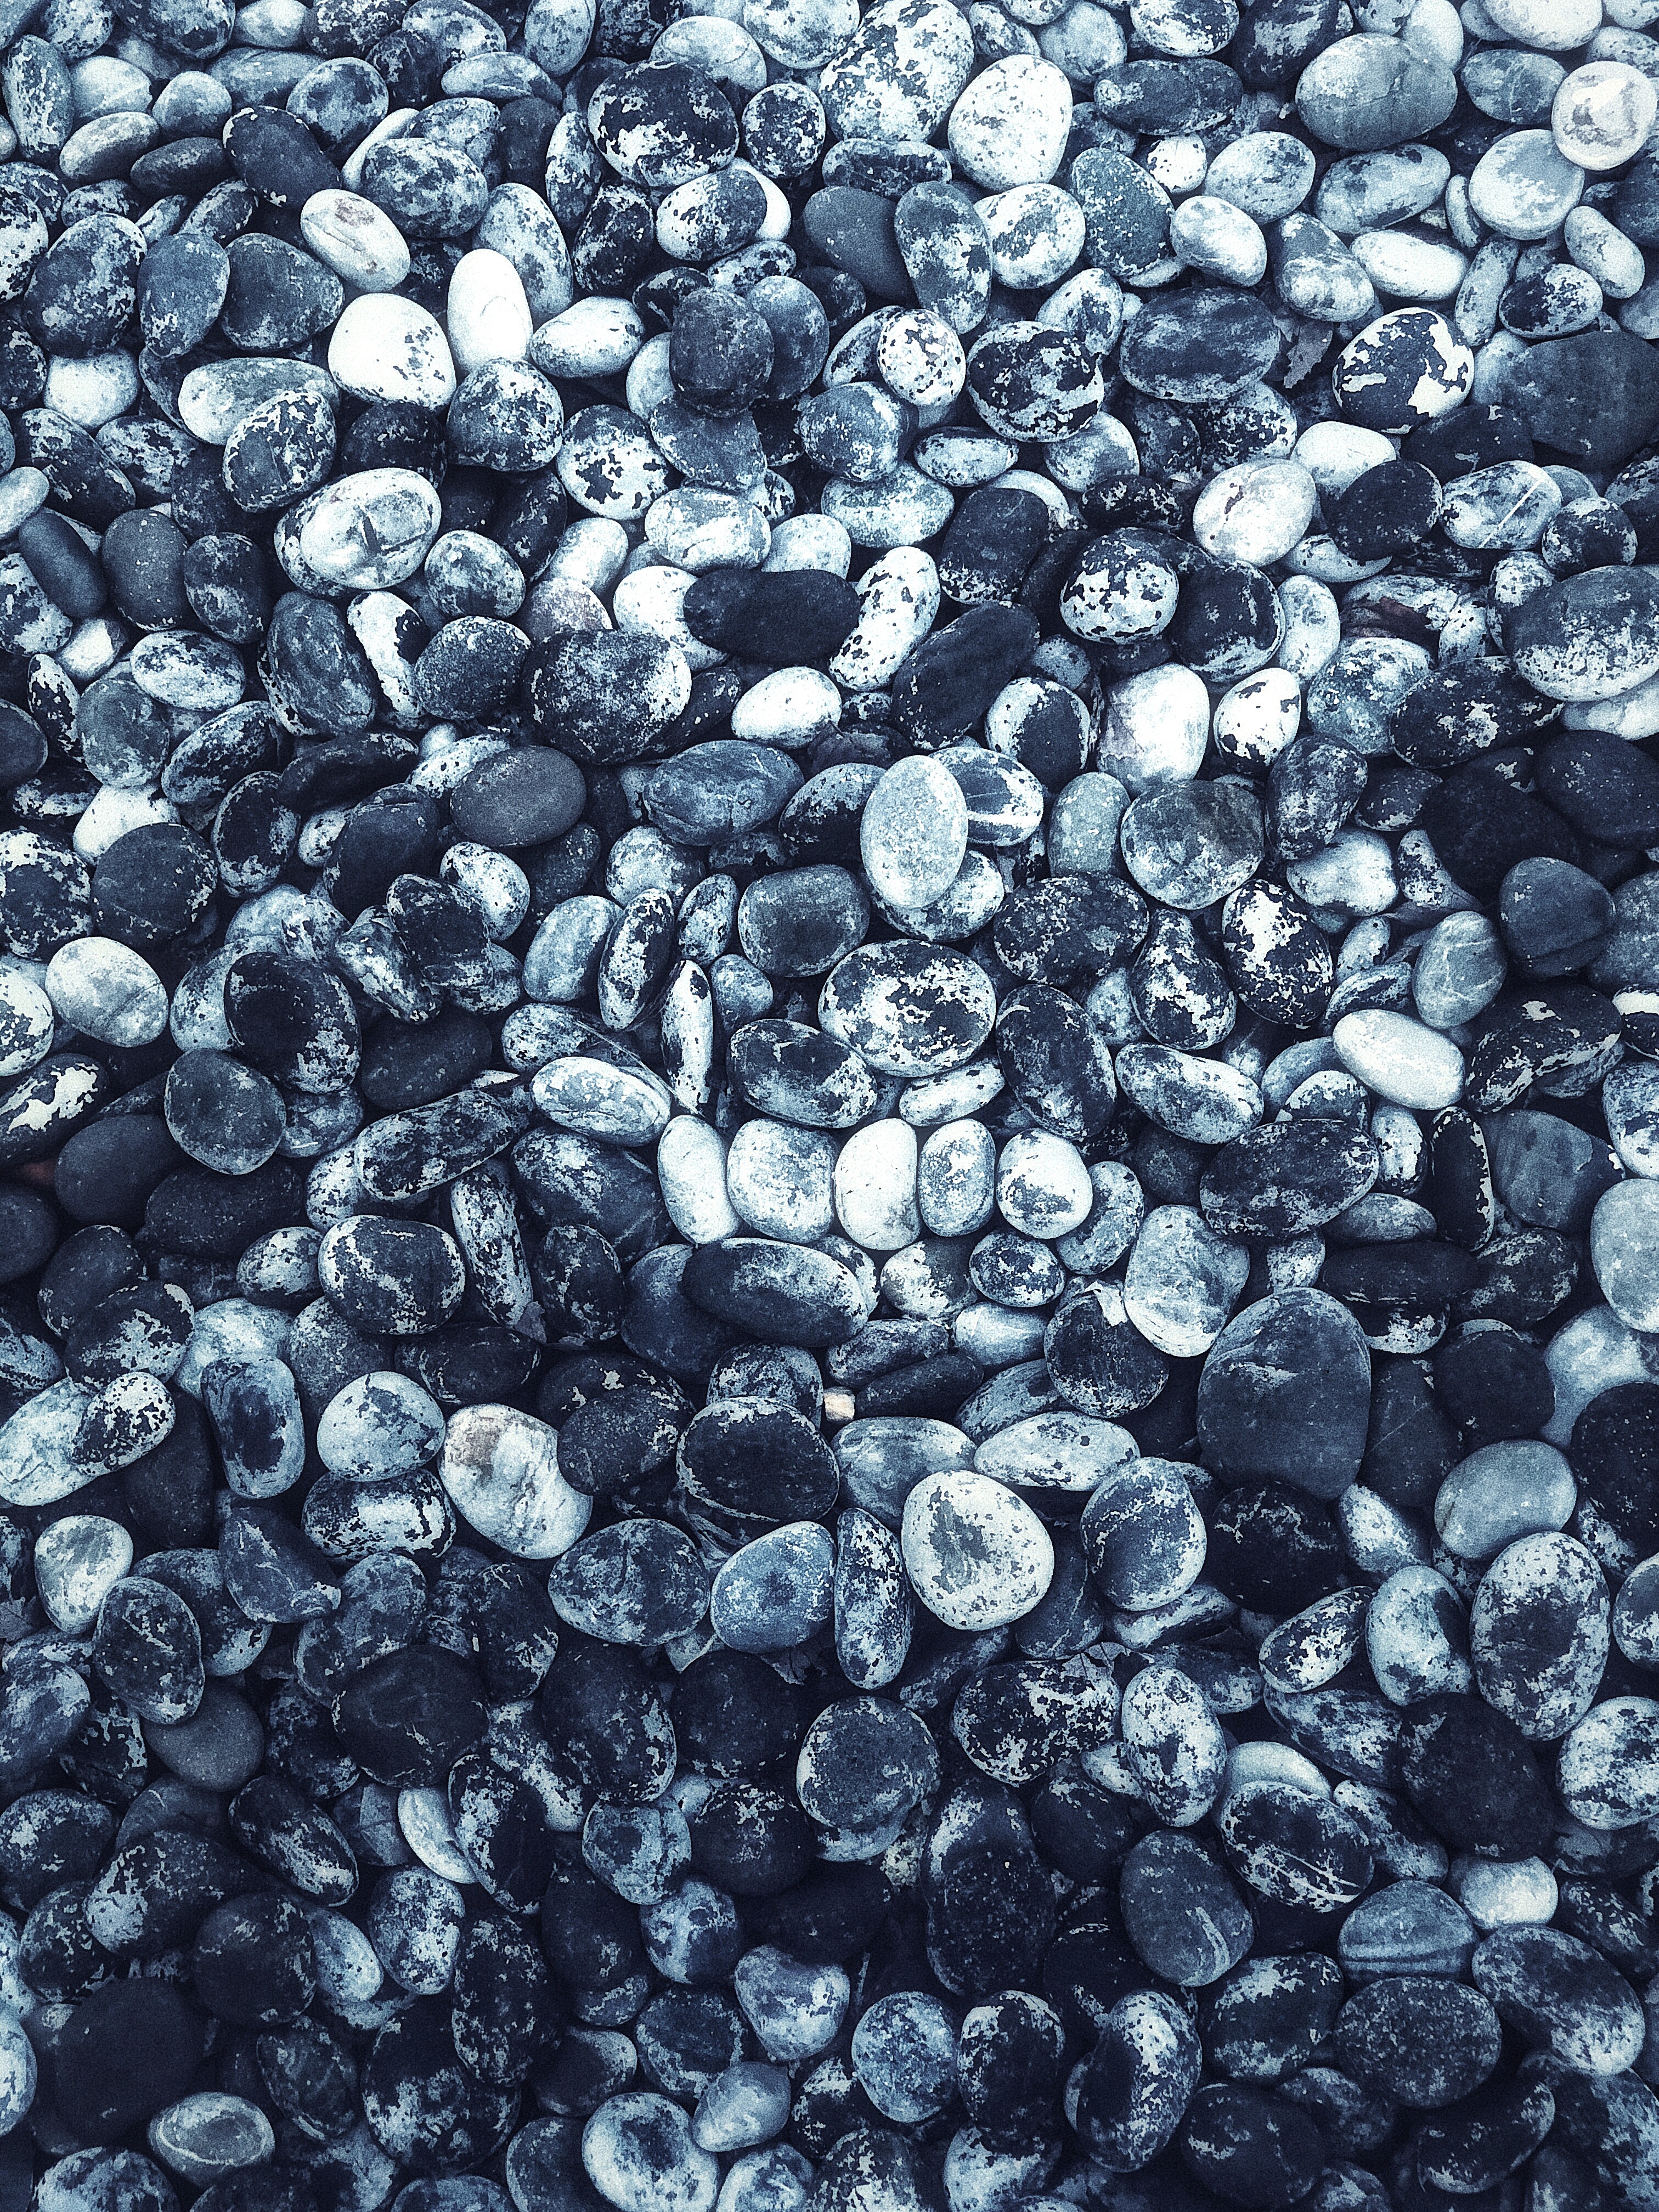 sea stones, nature, bw, chb, oval, seastones